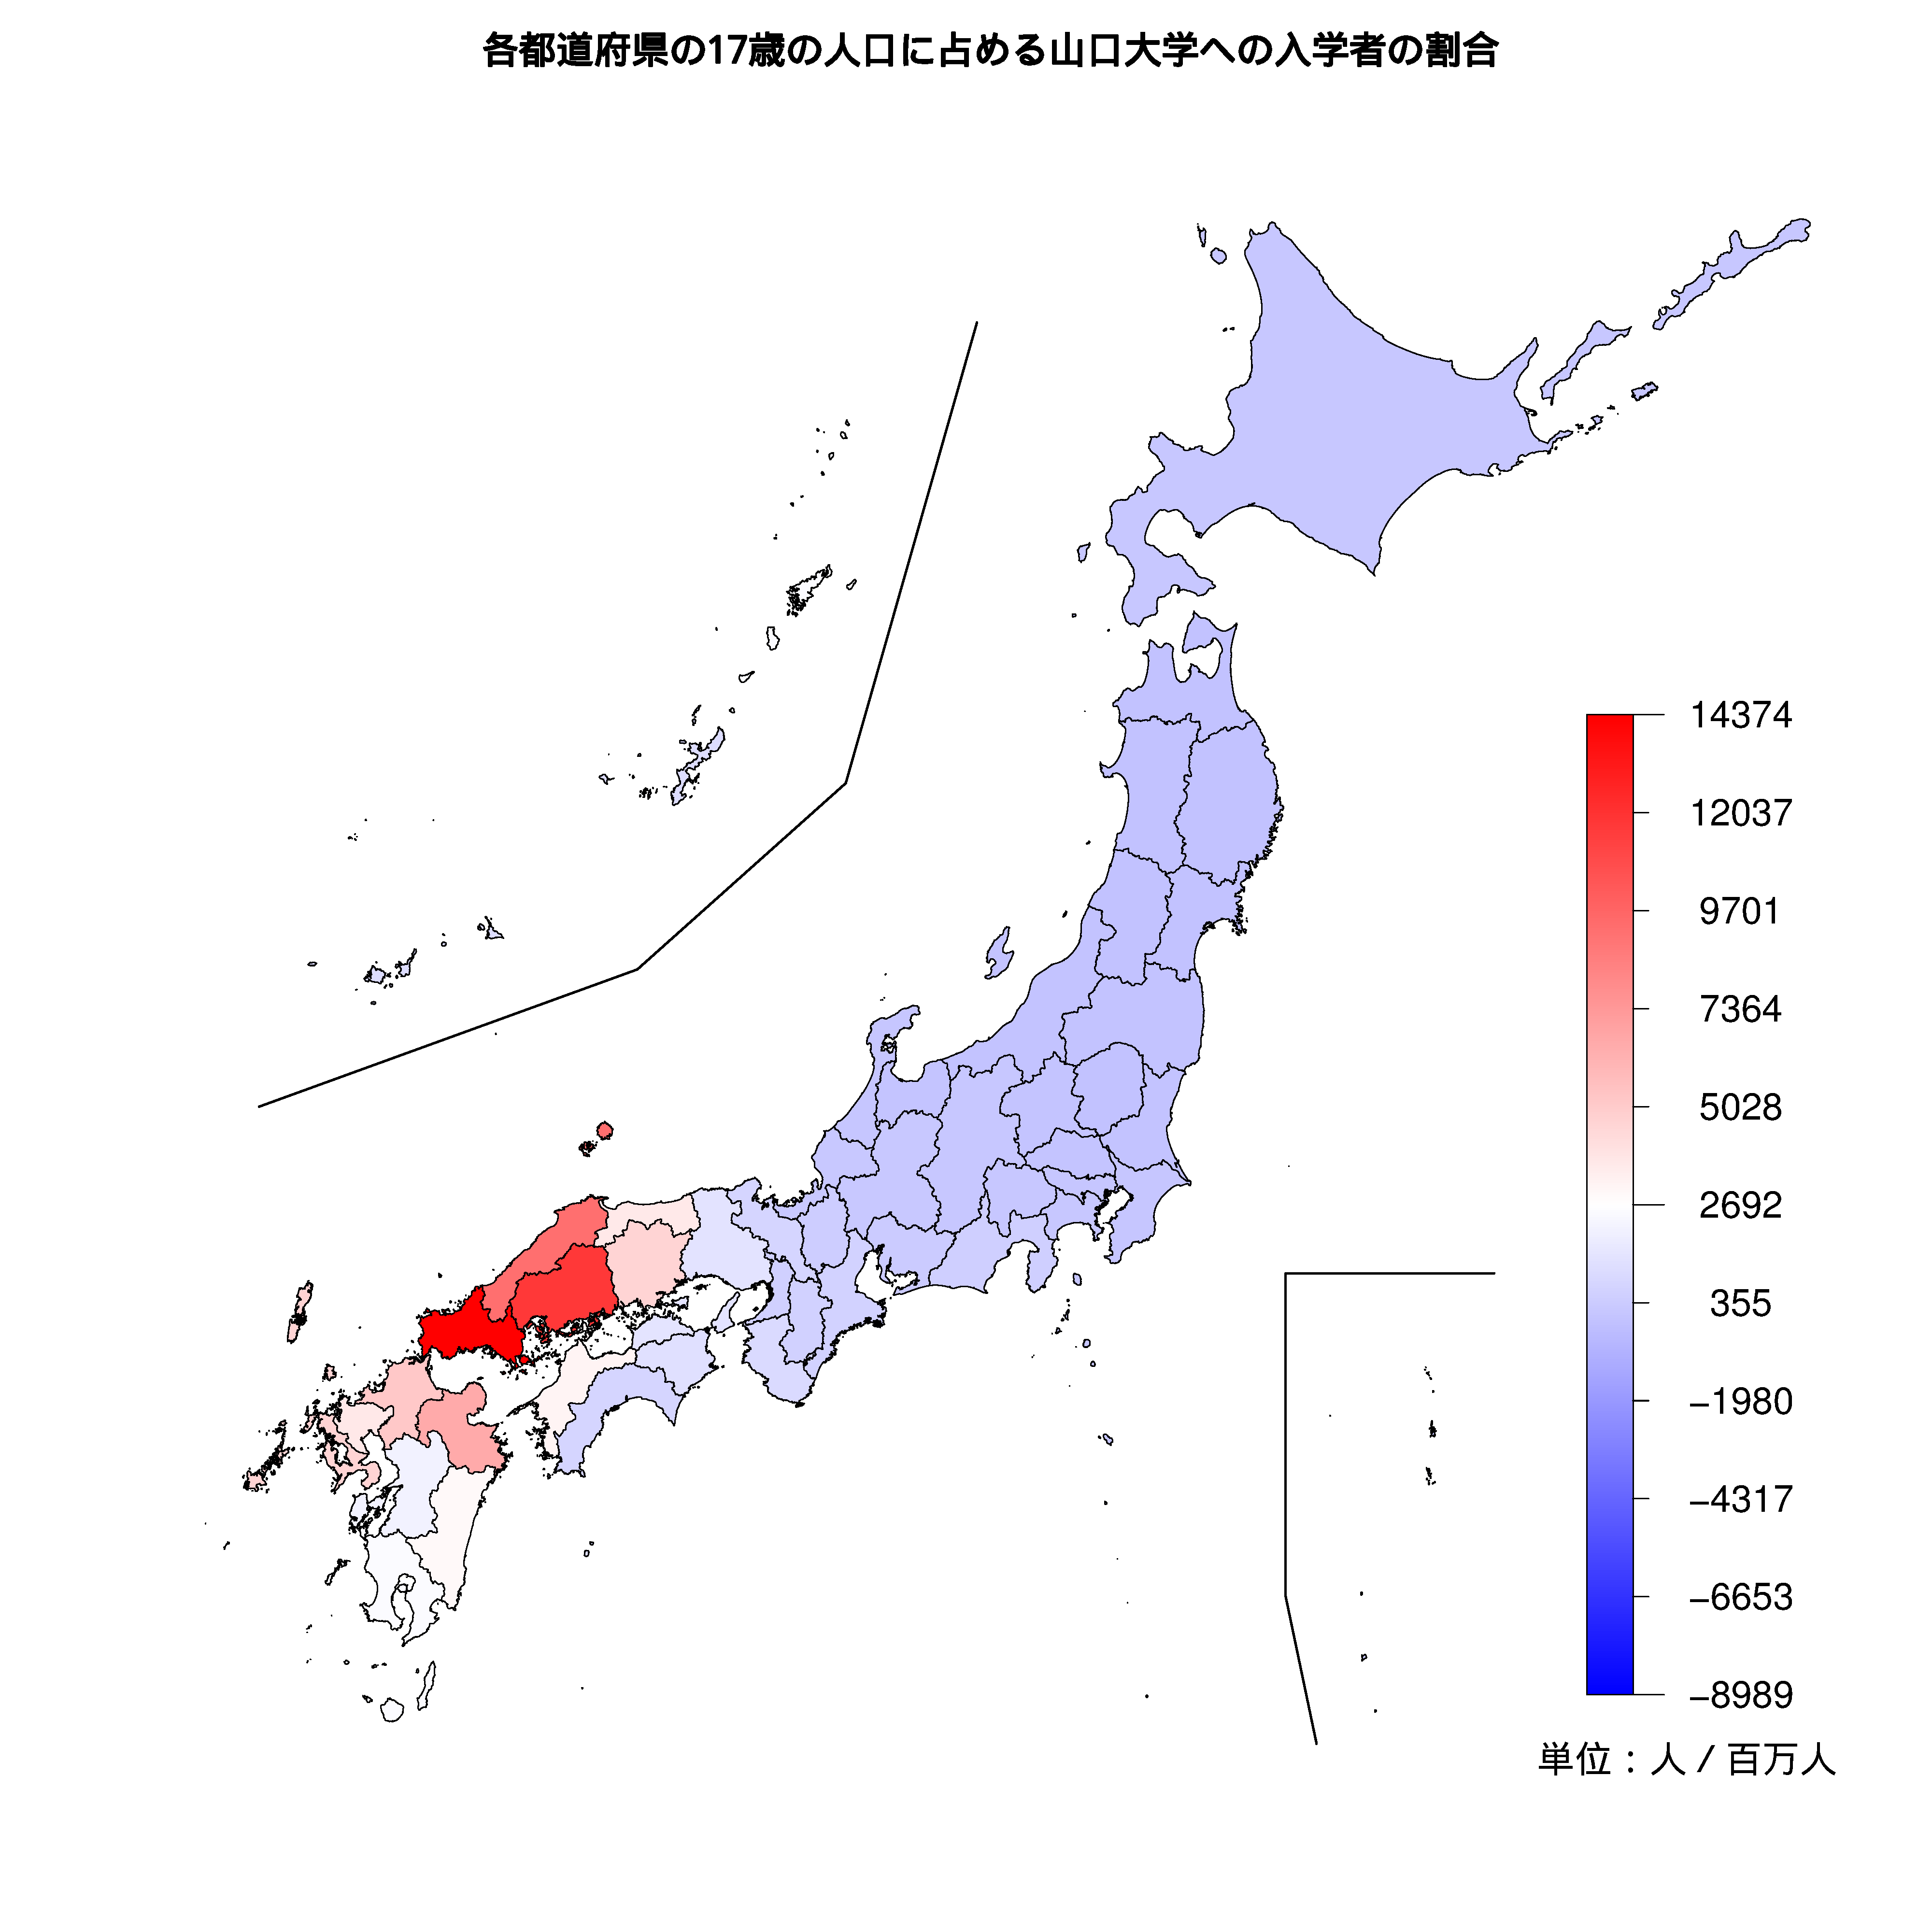 山口大学への入学者が多い都道府県の色分け地図